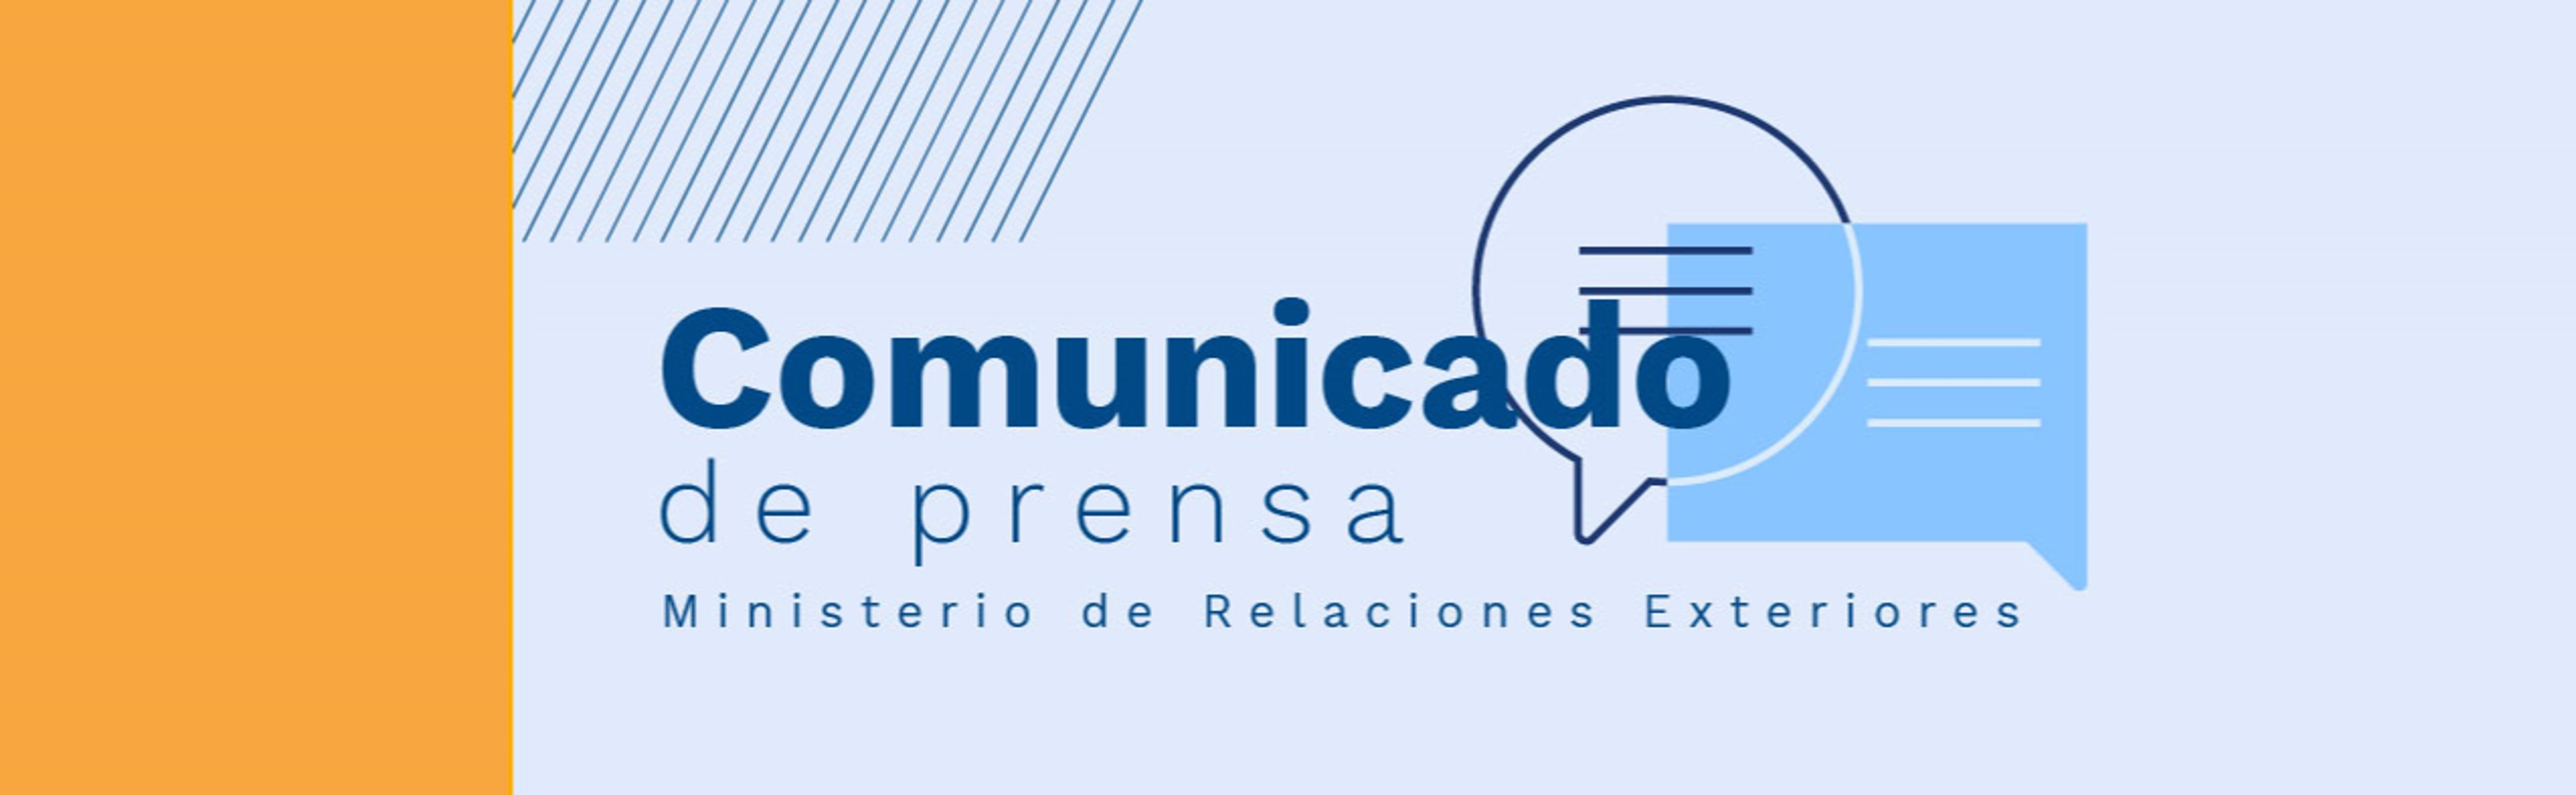 Comunicado de prensa en relación a la resolución sobre Nicaragua en el Consejo Permanente de la OEA